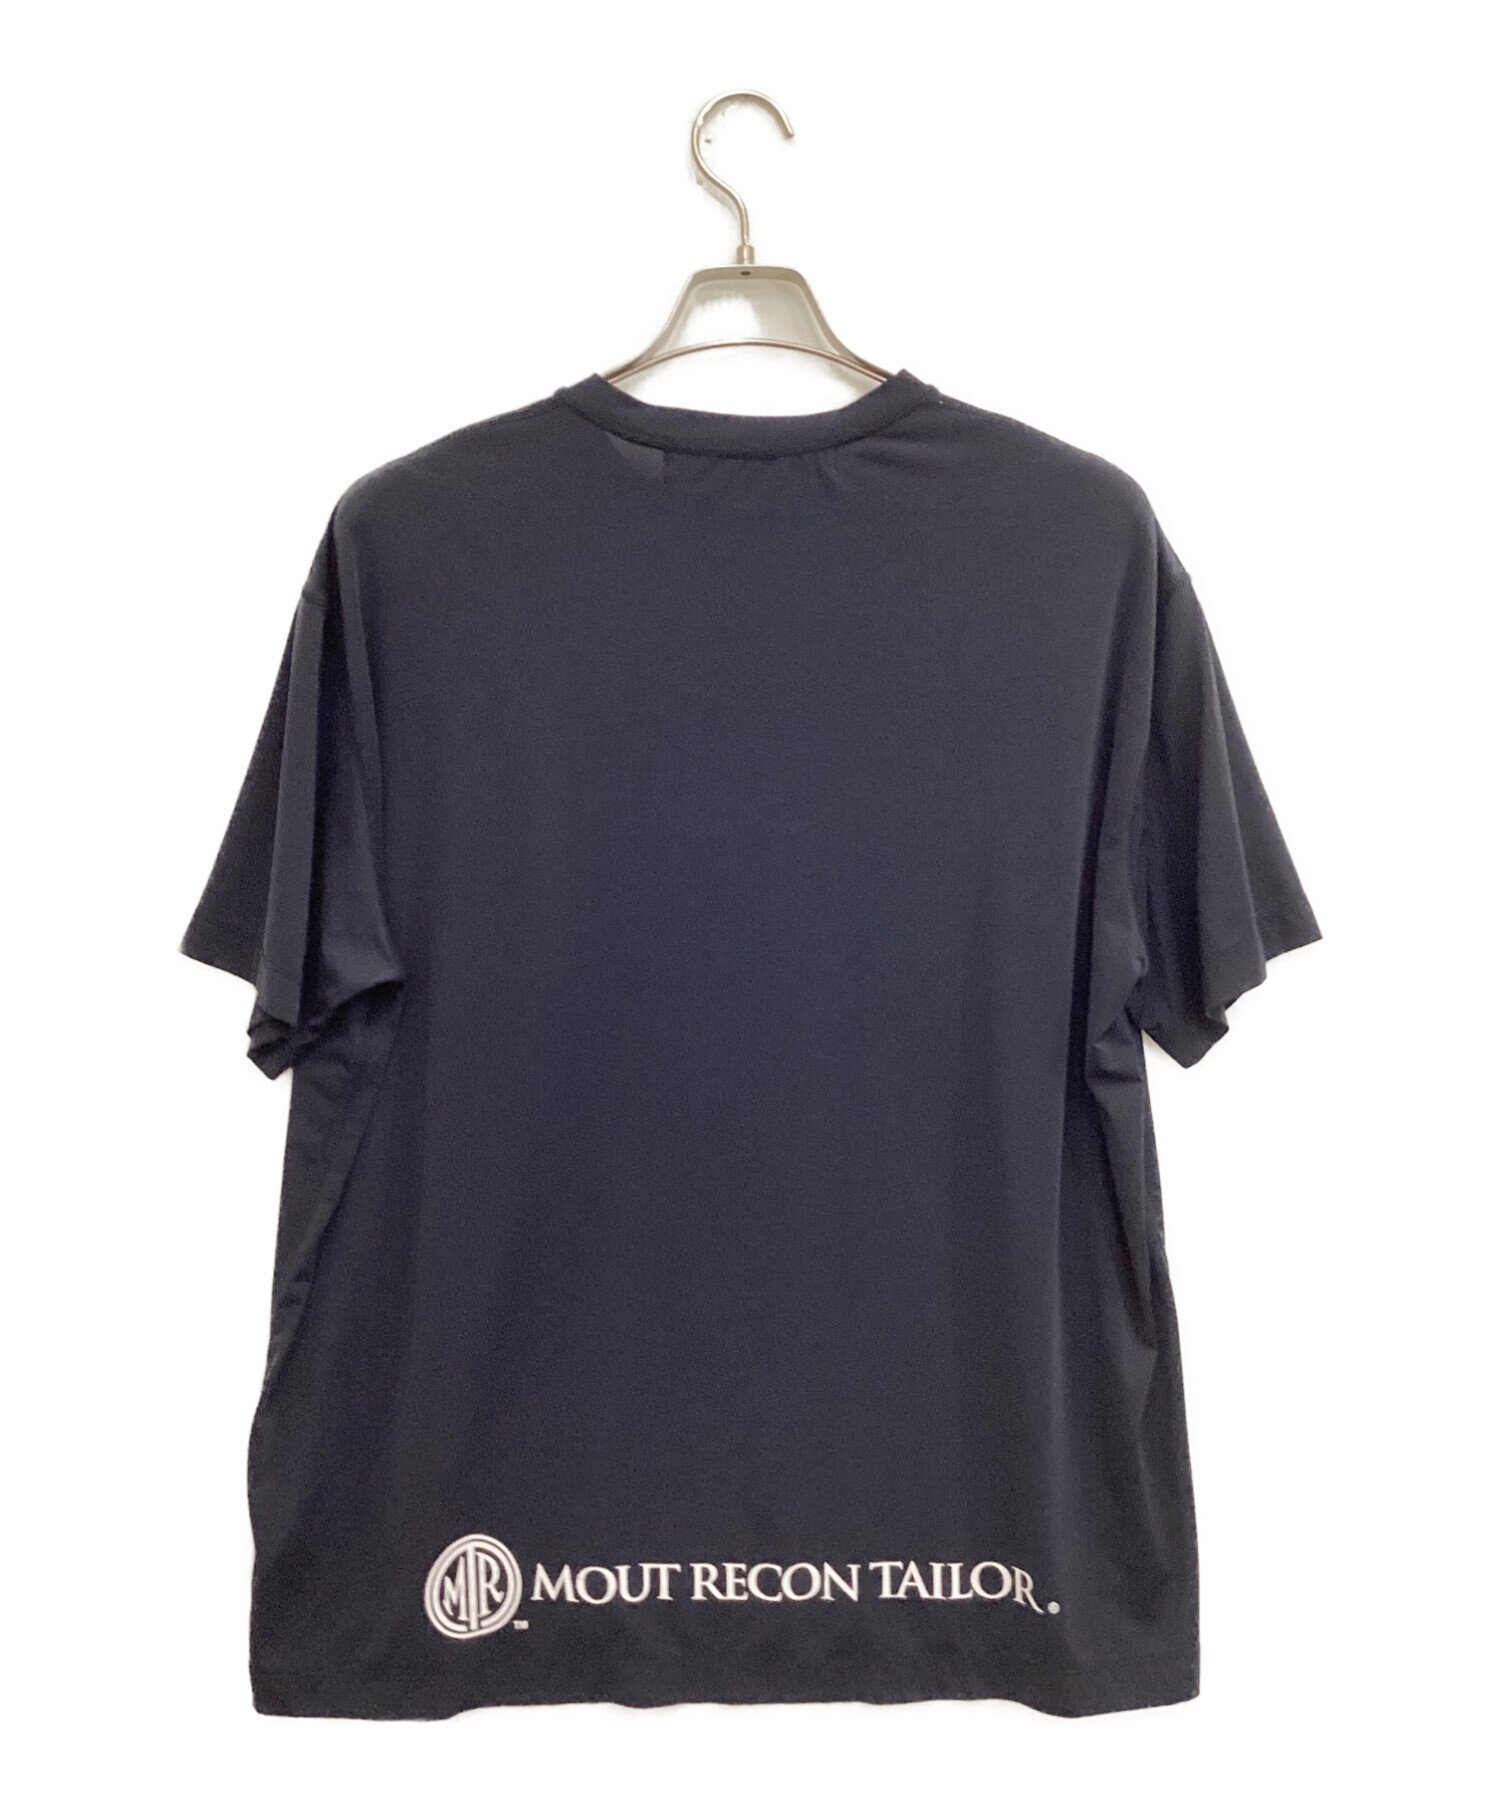 mout recon tailor (マウトリーコンテーラー) Tシャツ ネイビー サイズ:46